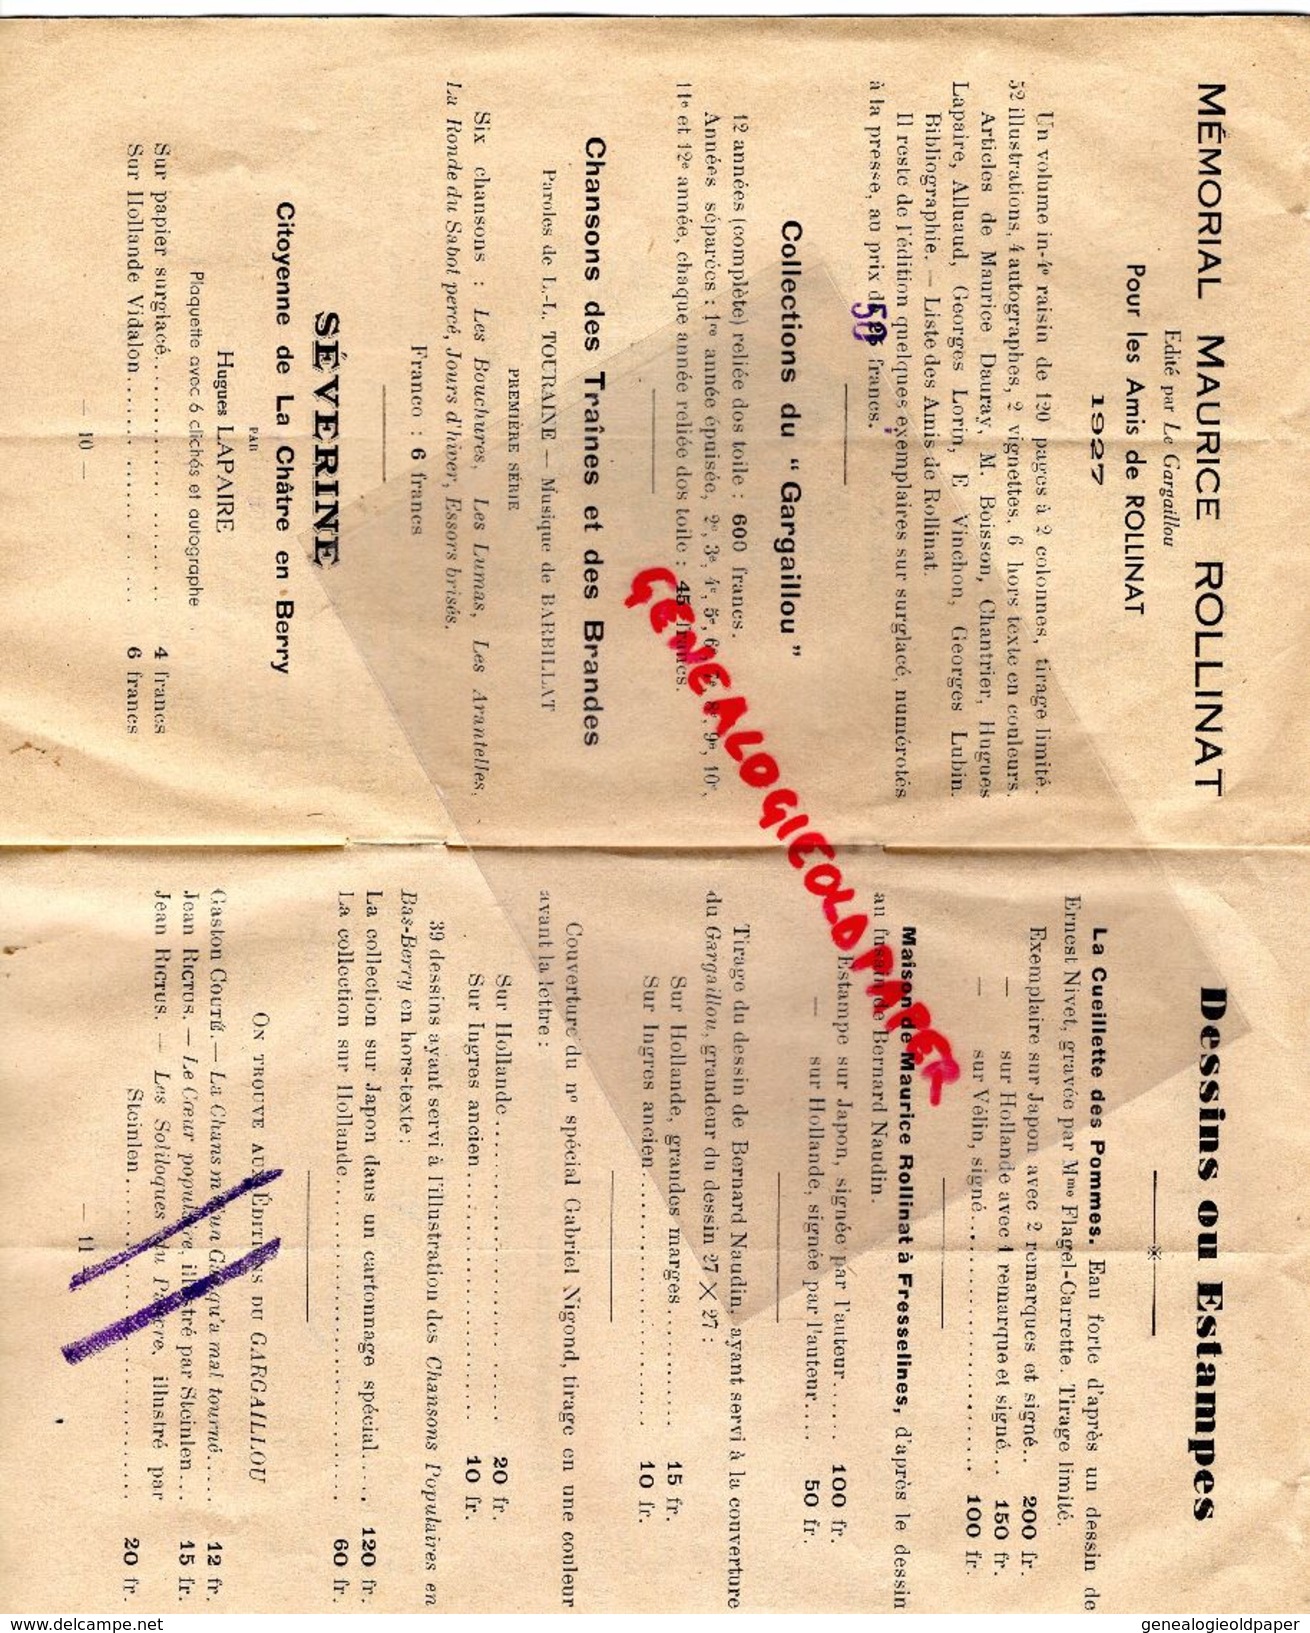 36- CHATEAUROUX-75- PARIS-LIVRET EDITIONS DU GARGAILLOU-1937-MAURICE DURAY-BERRI-CHANSONS BERGERE-AMOUR-BARBILLAT NIGOND